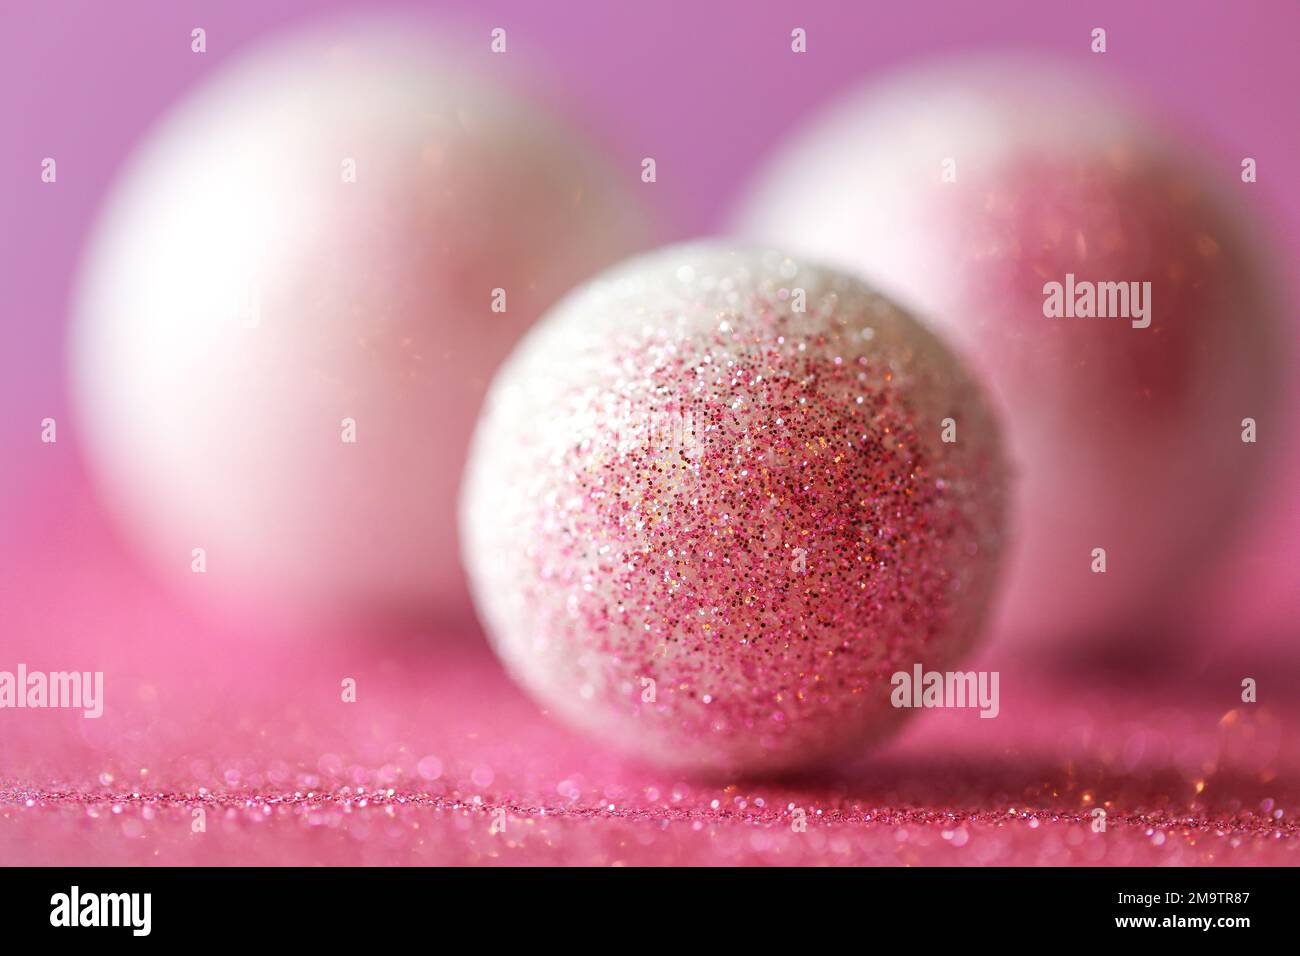 Boules rondes et paillettes roses.arrière-plan abstrait aux couleurs lilas et blanches avec boules rondes.arrière-plan festif brillant Banque D'Images